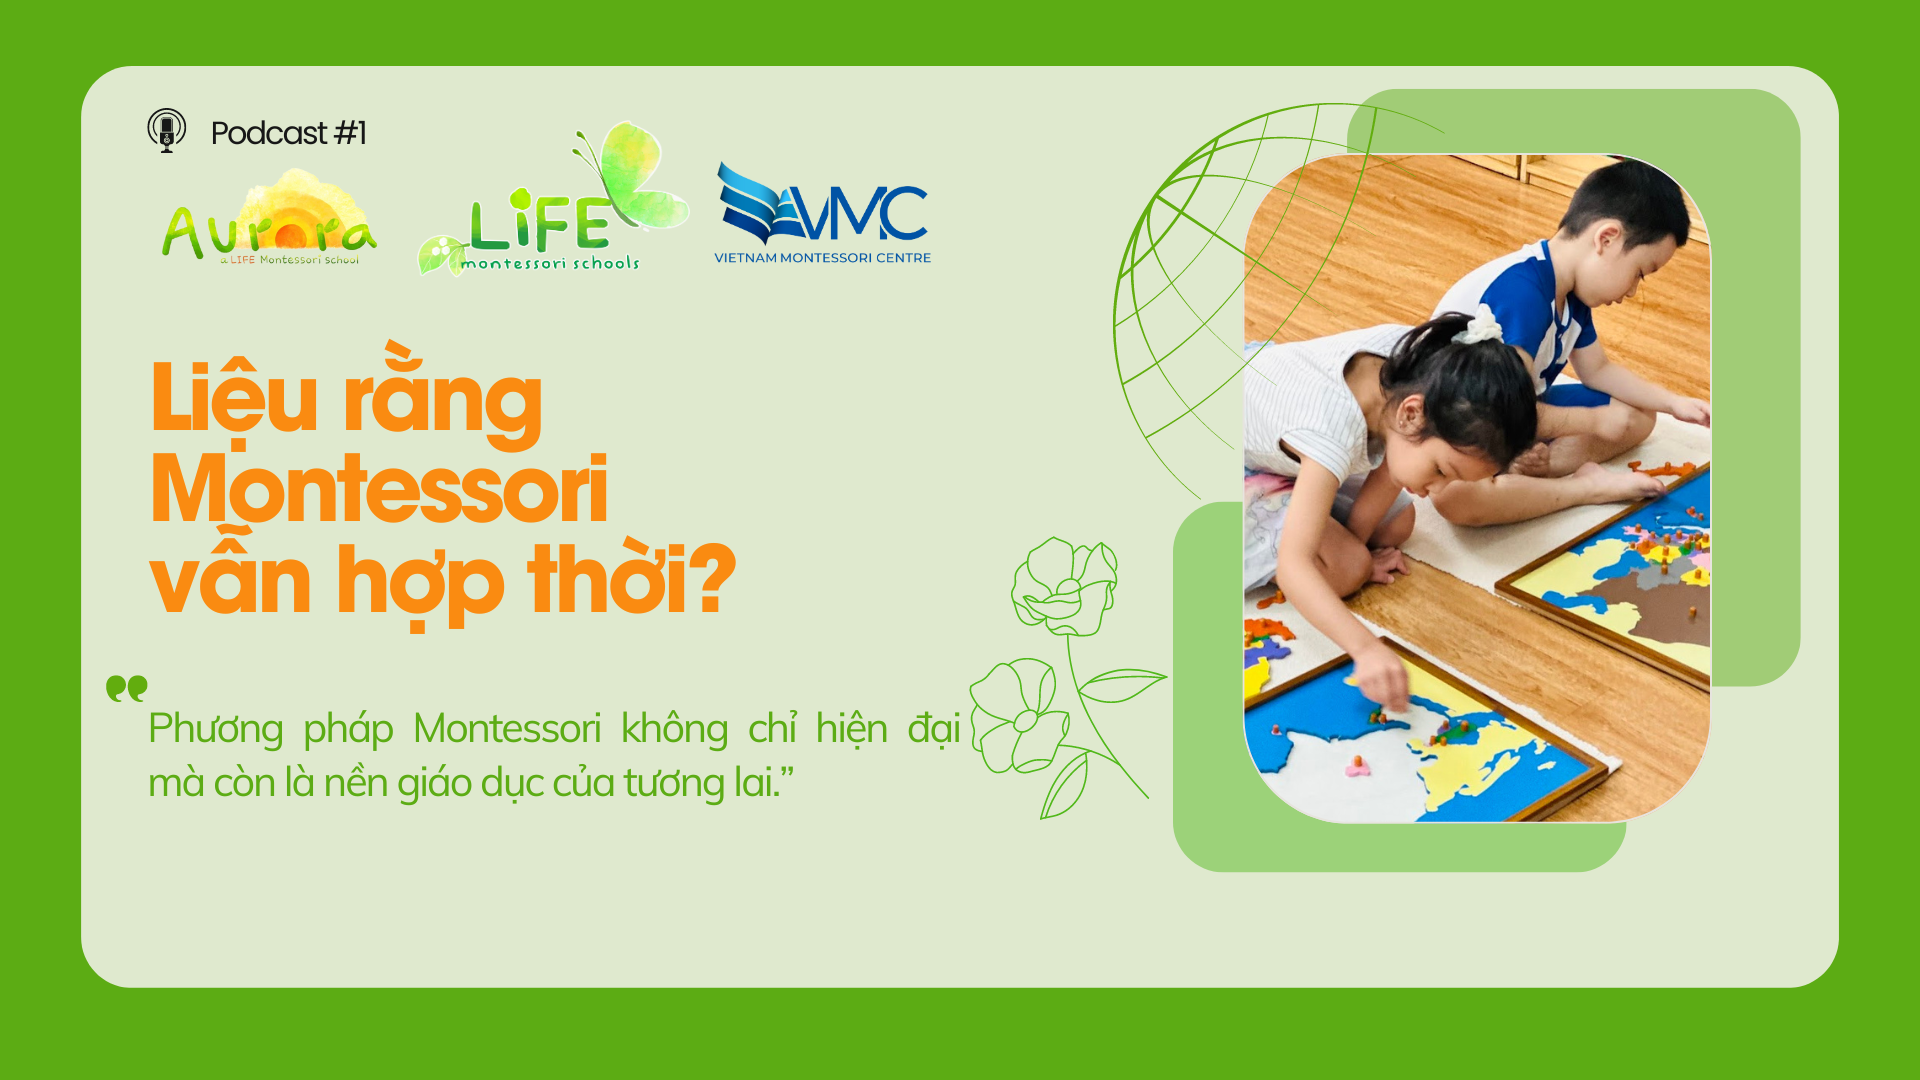 Liệu rằng Montessori vẫn hợp thời?